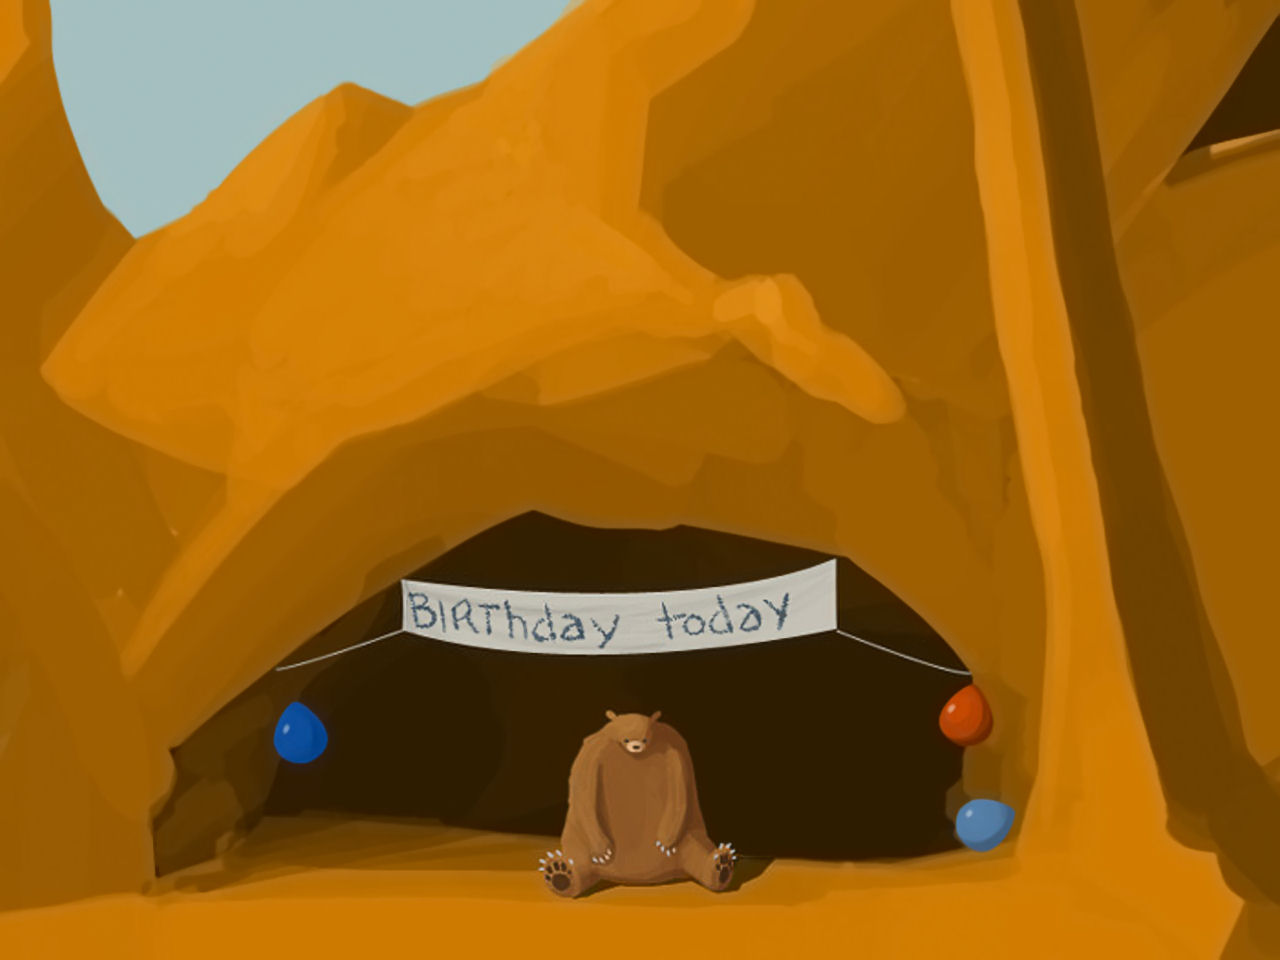 sad_bear_birthday_cave.jpg